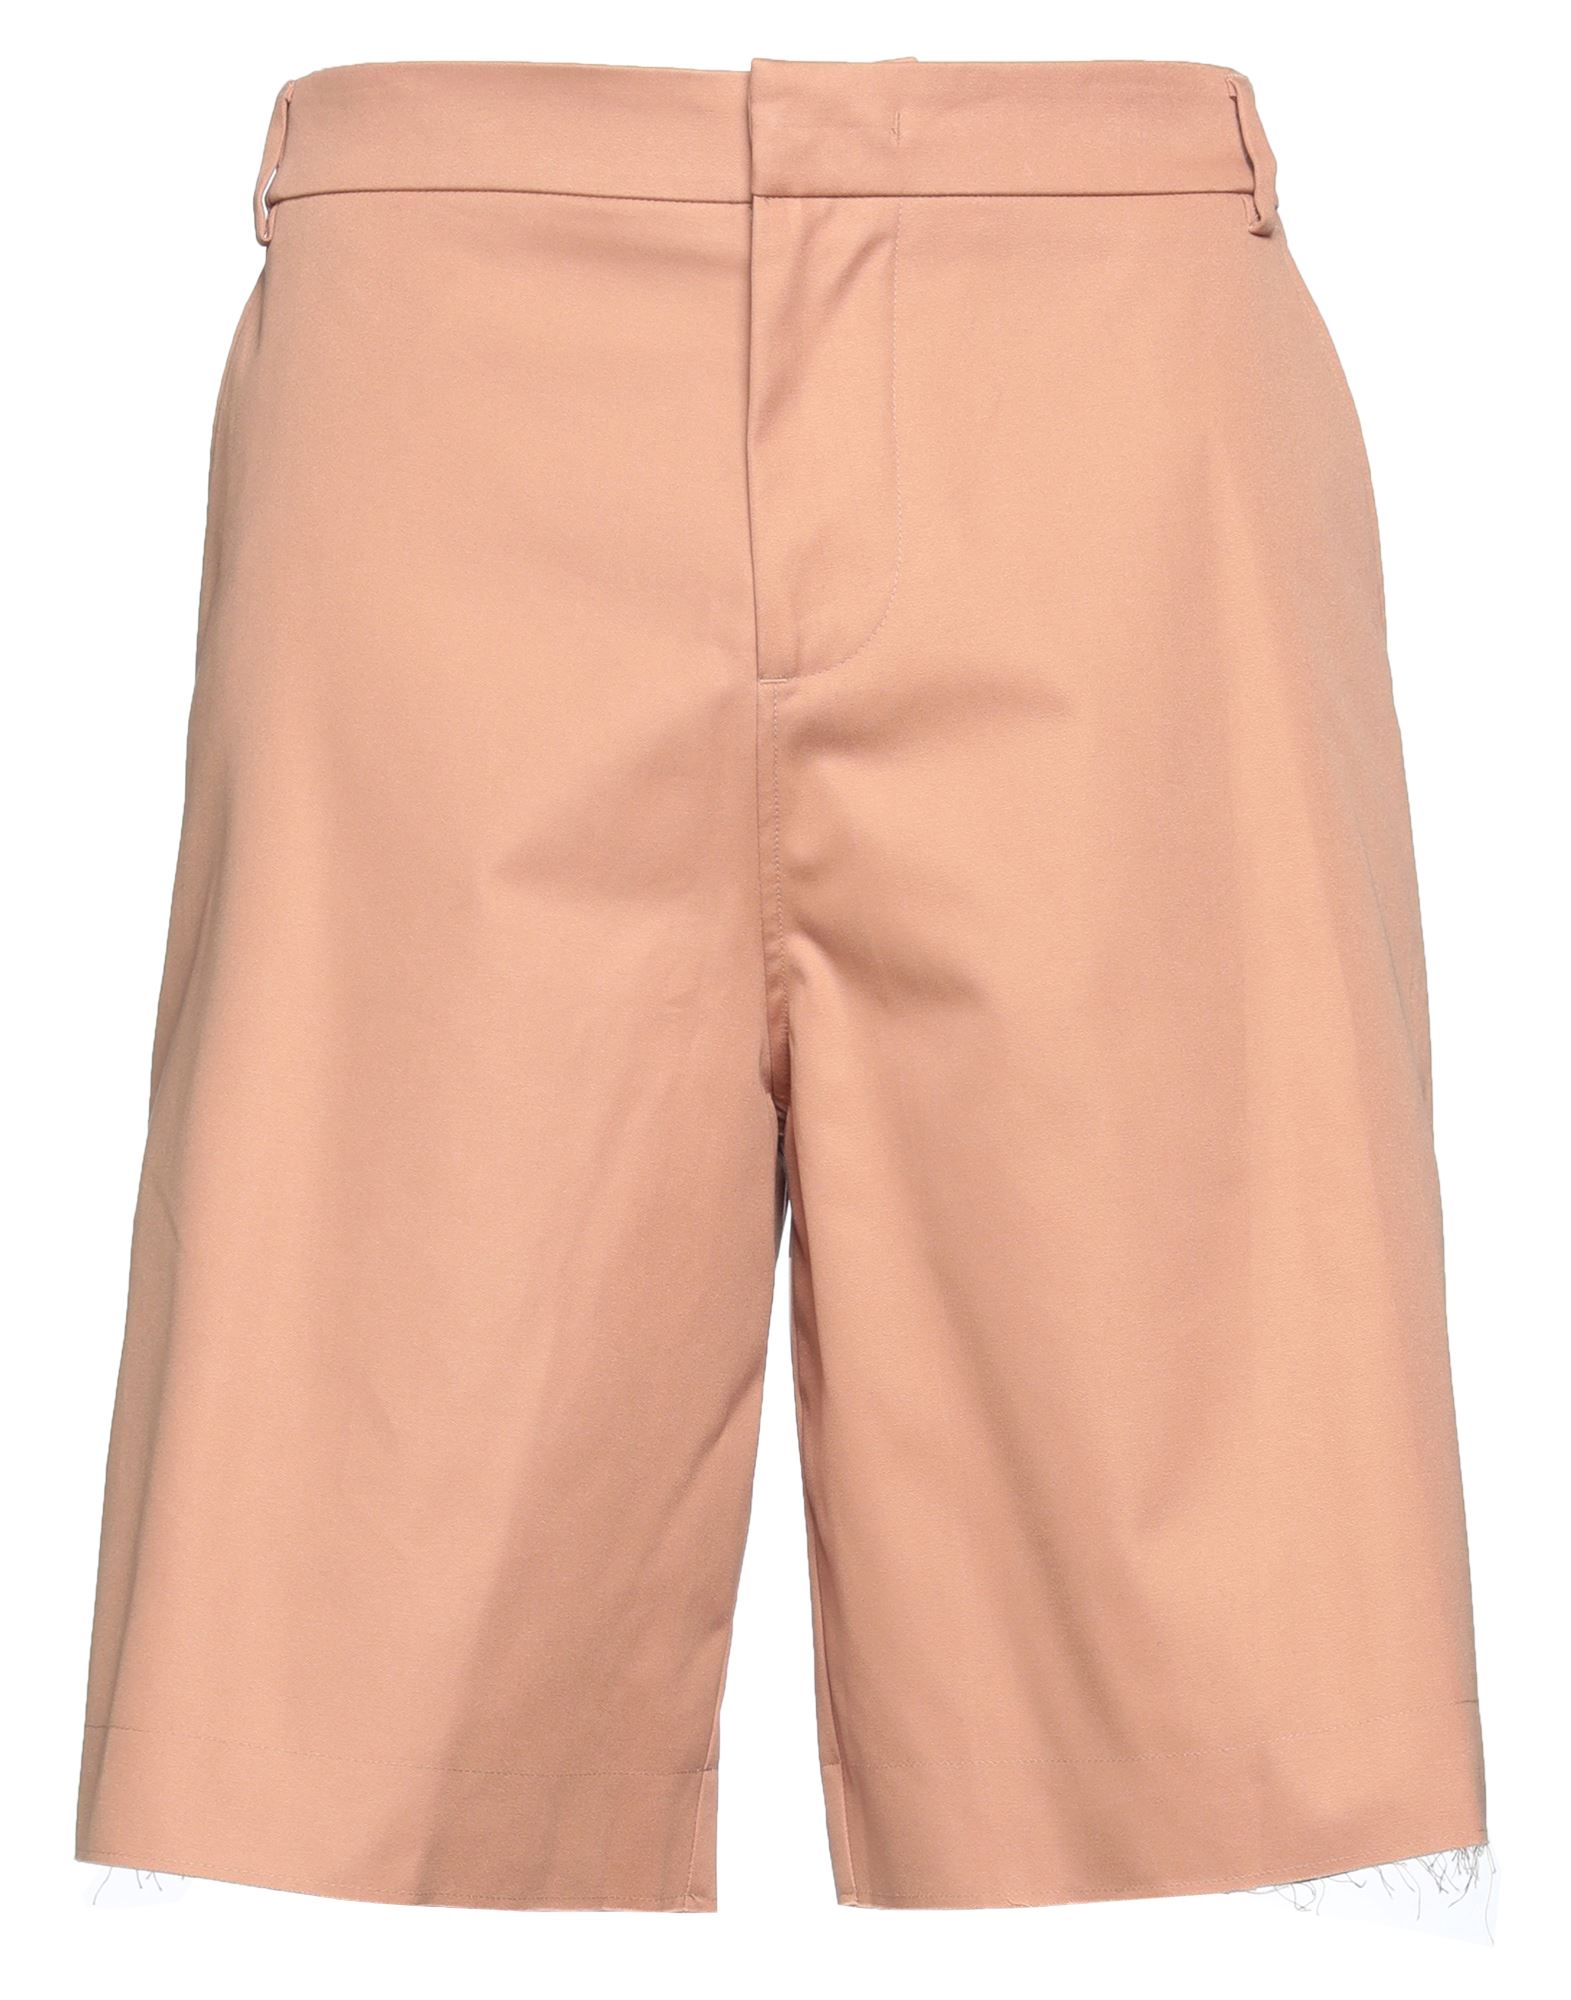 424 Fourtwofour Man Shorts & Bermuda Shorts Salmon Pink Size L Cotton